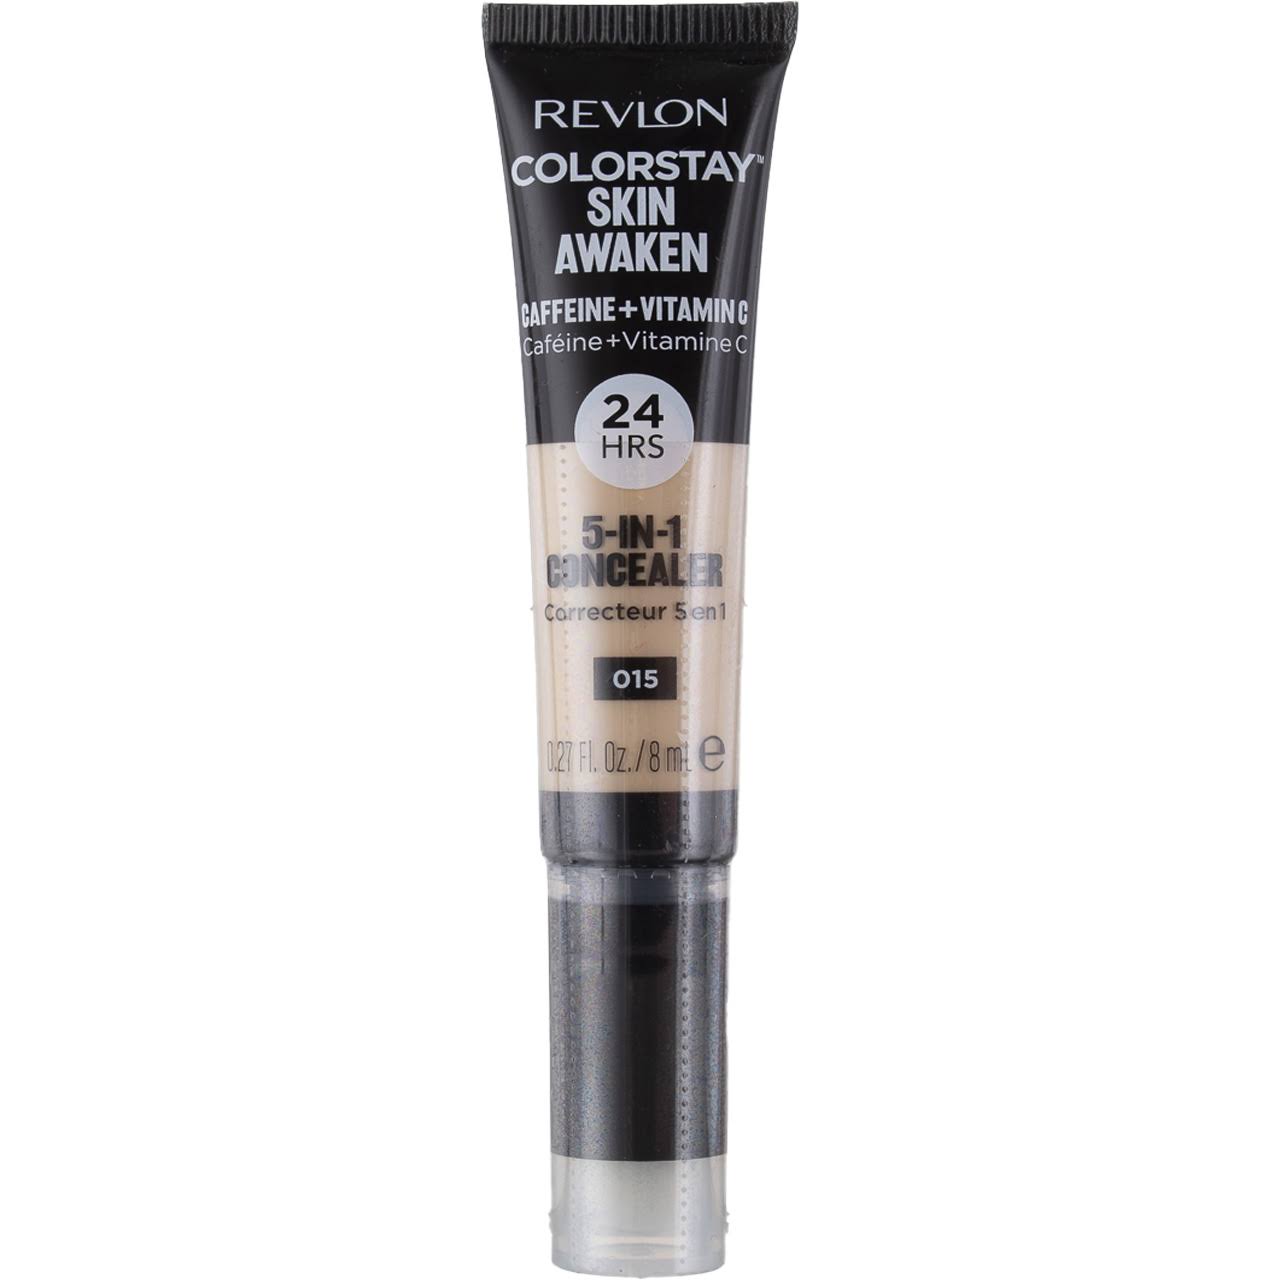 Revlon Colorstay Skin Awaken 5 in 1 Concealer - 015 Light